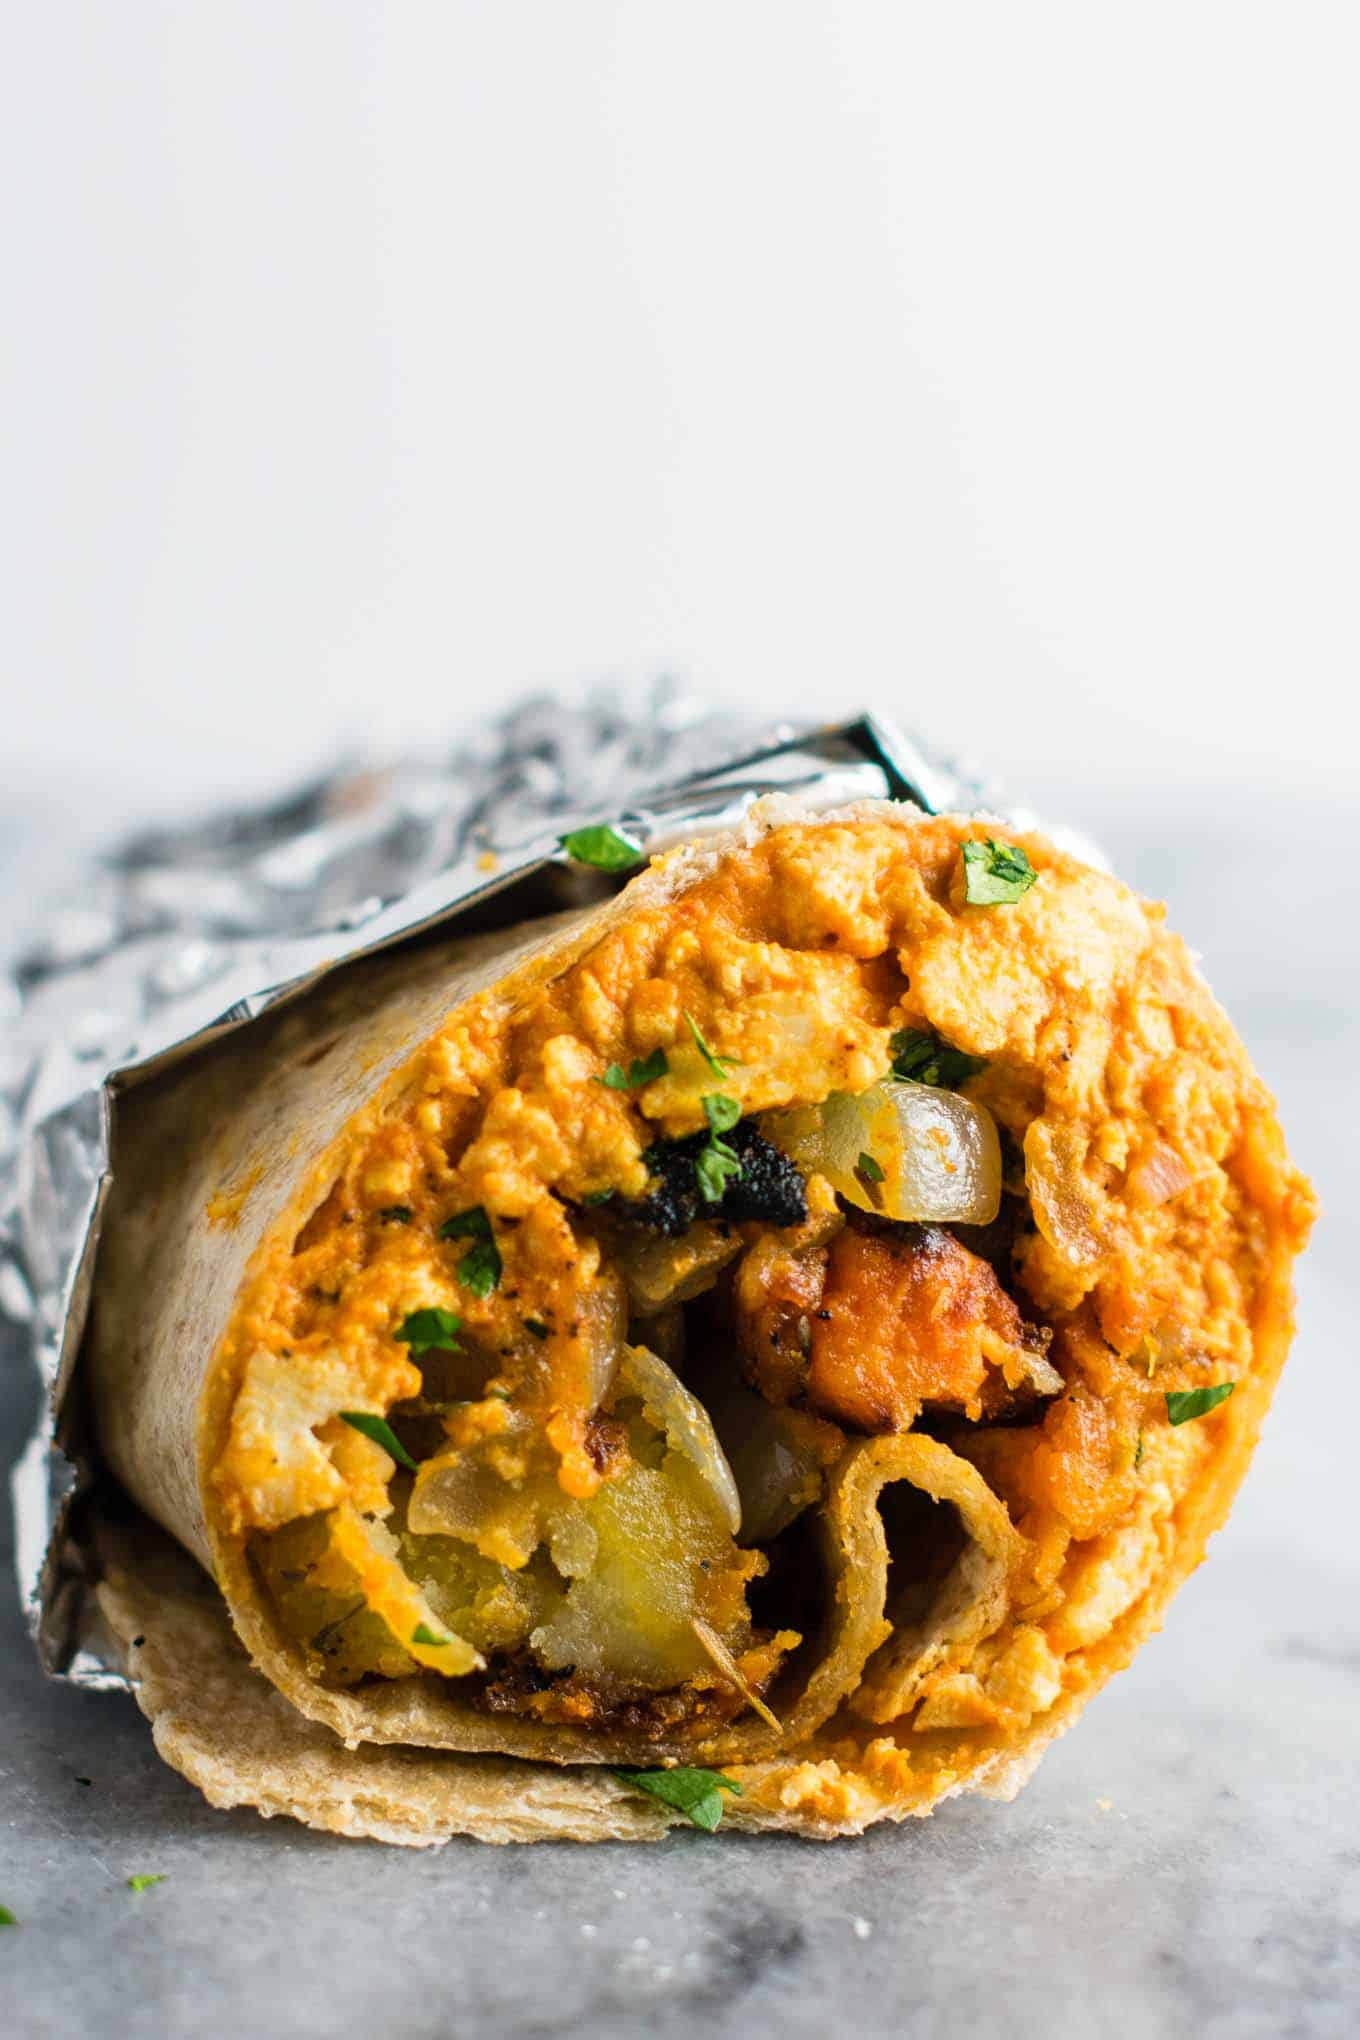 Best Vegan Breakfast
 The Best Vegan Breakfast Burrito Recipe Build Your Bite